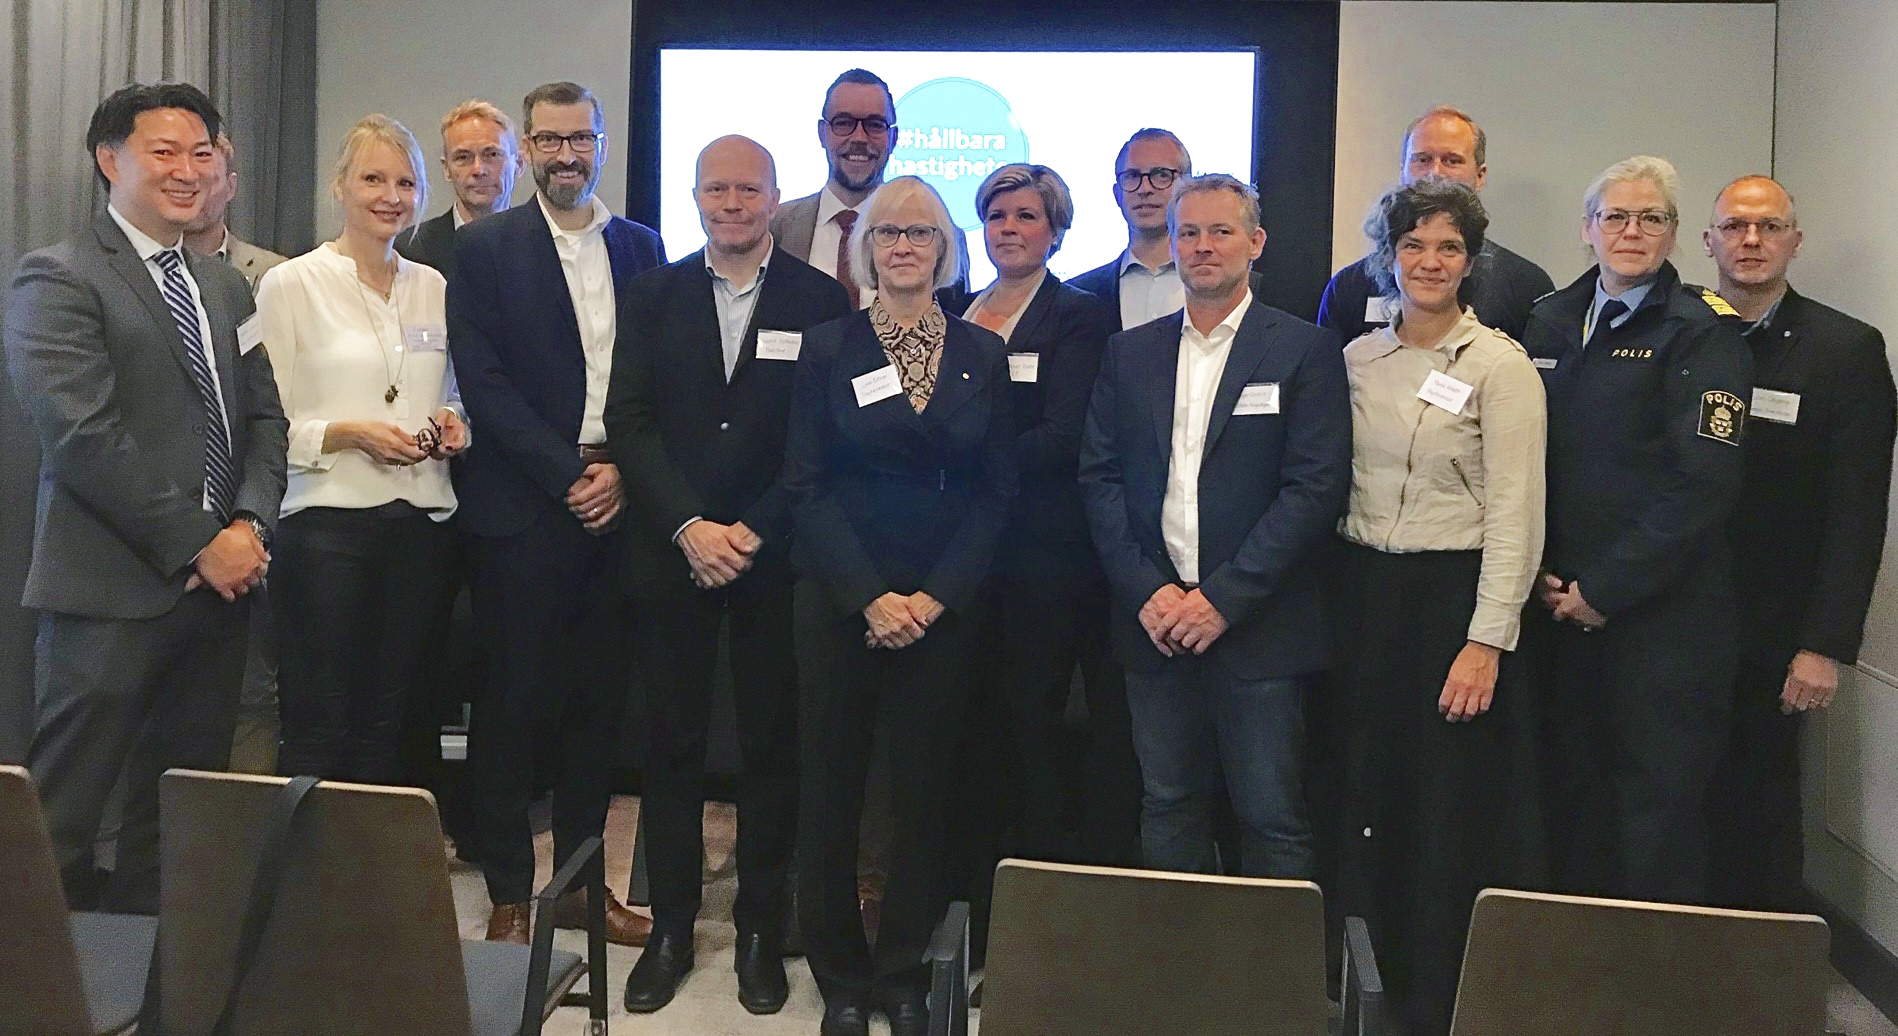 Gruppbild från högnivåmöte 2019 med statssekreterare Mattias Landgren om hållbara hastigheter